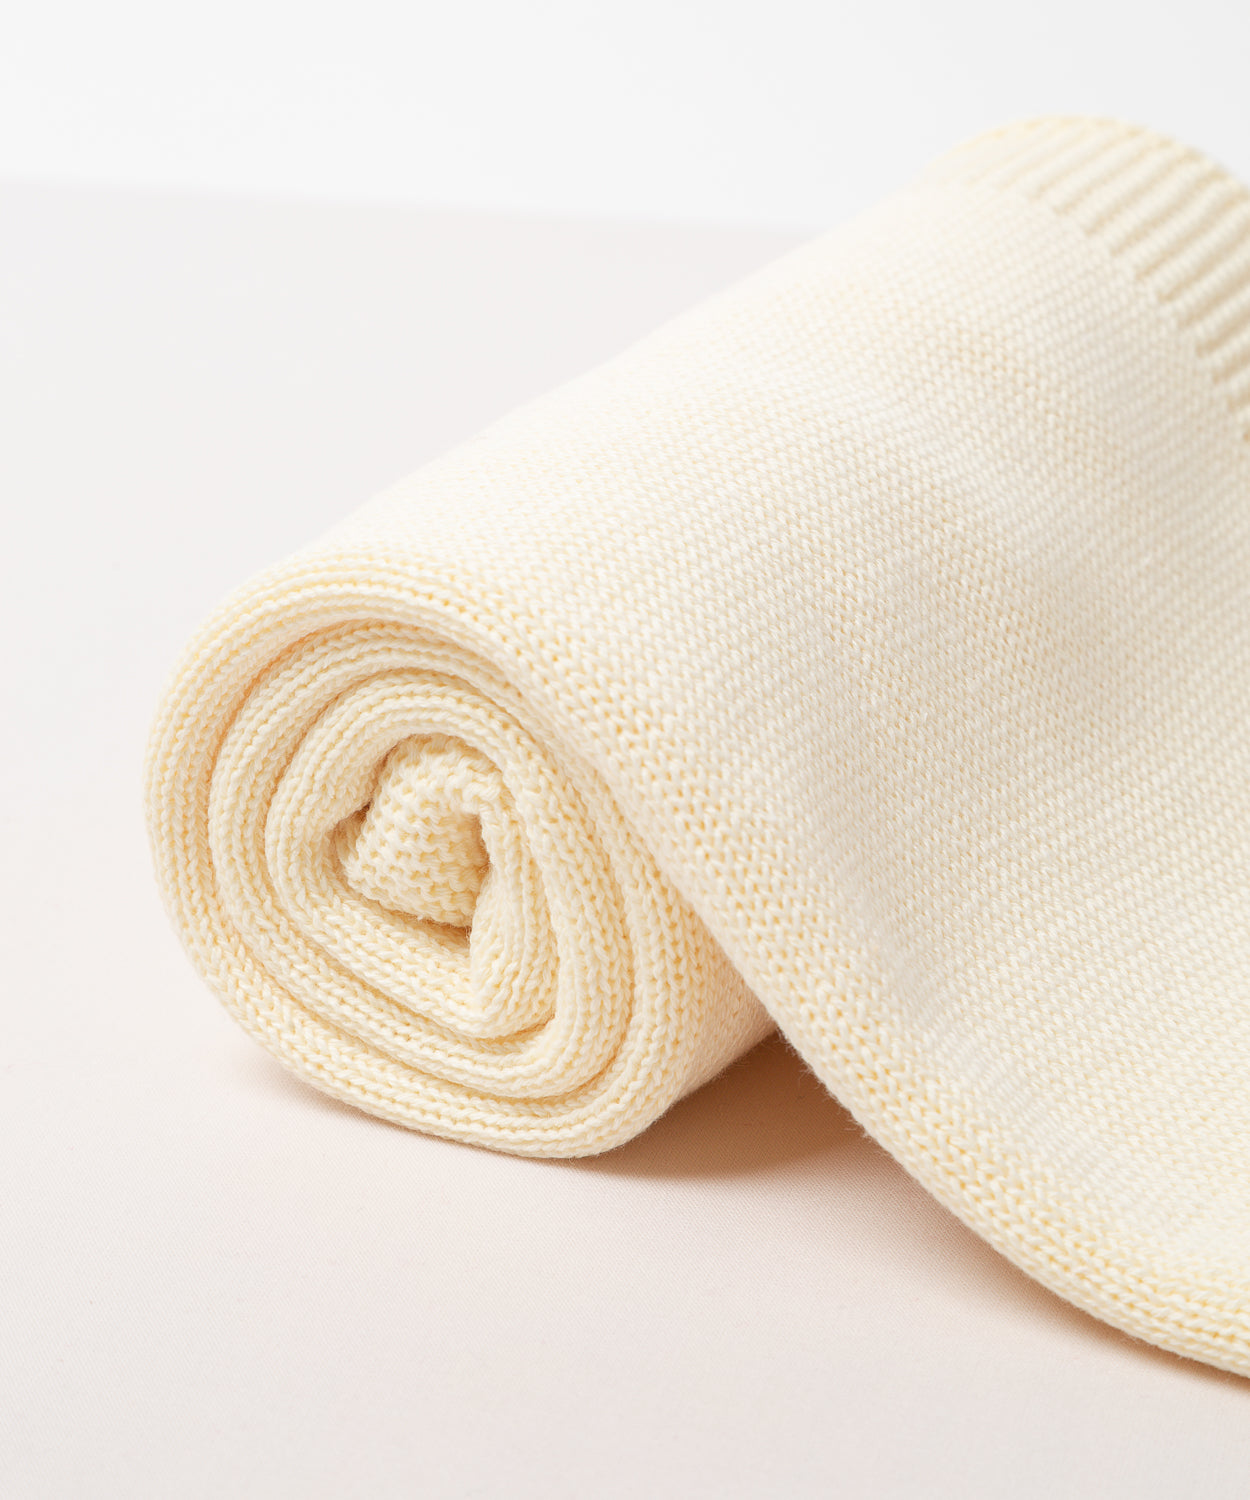 A foto destaca os detalhes da manta, evidenciando seu conforto e delicadeza. É possível perceber que ela é uma peça de qualidade, que proporciona aconchego para a bebê.